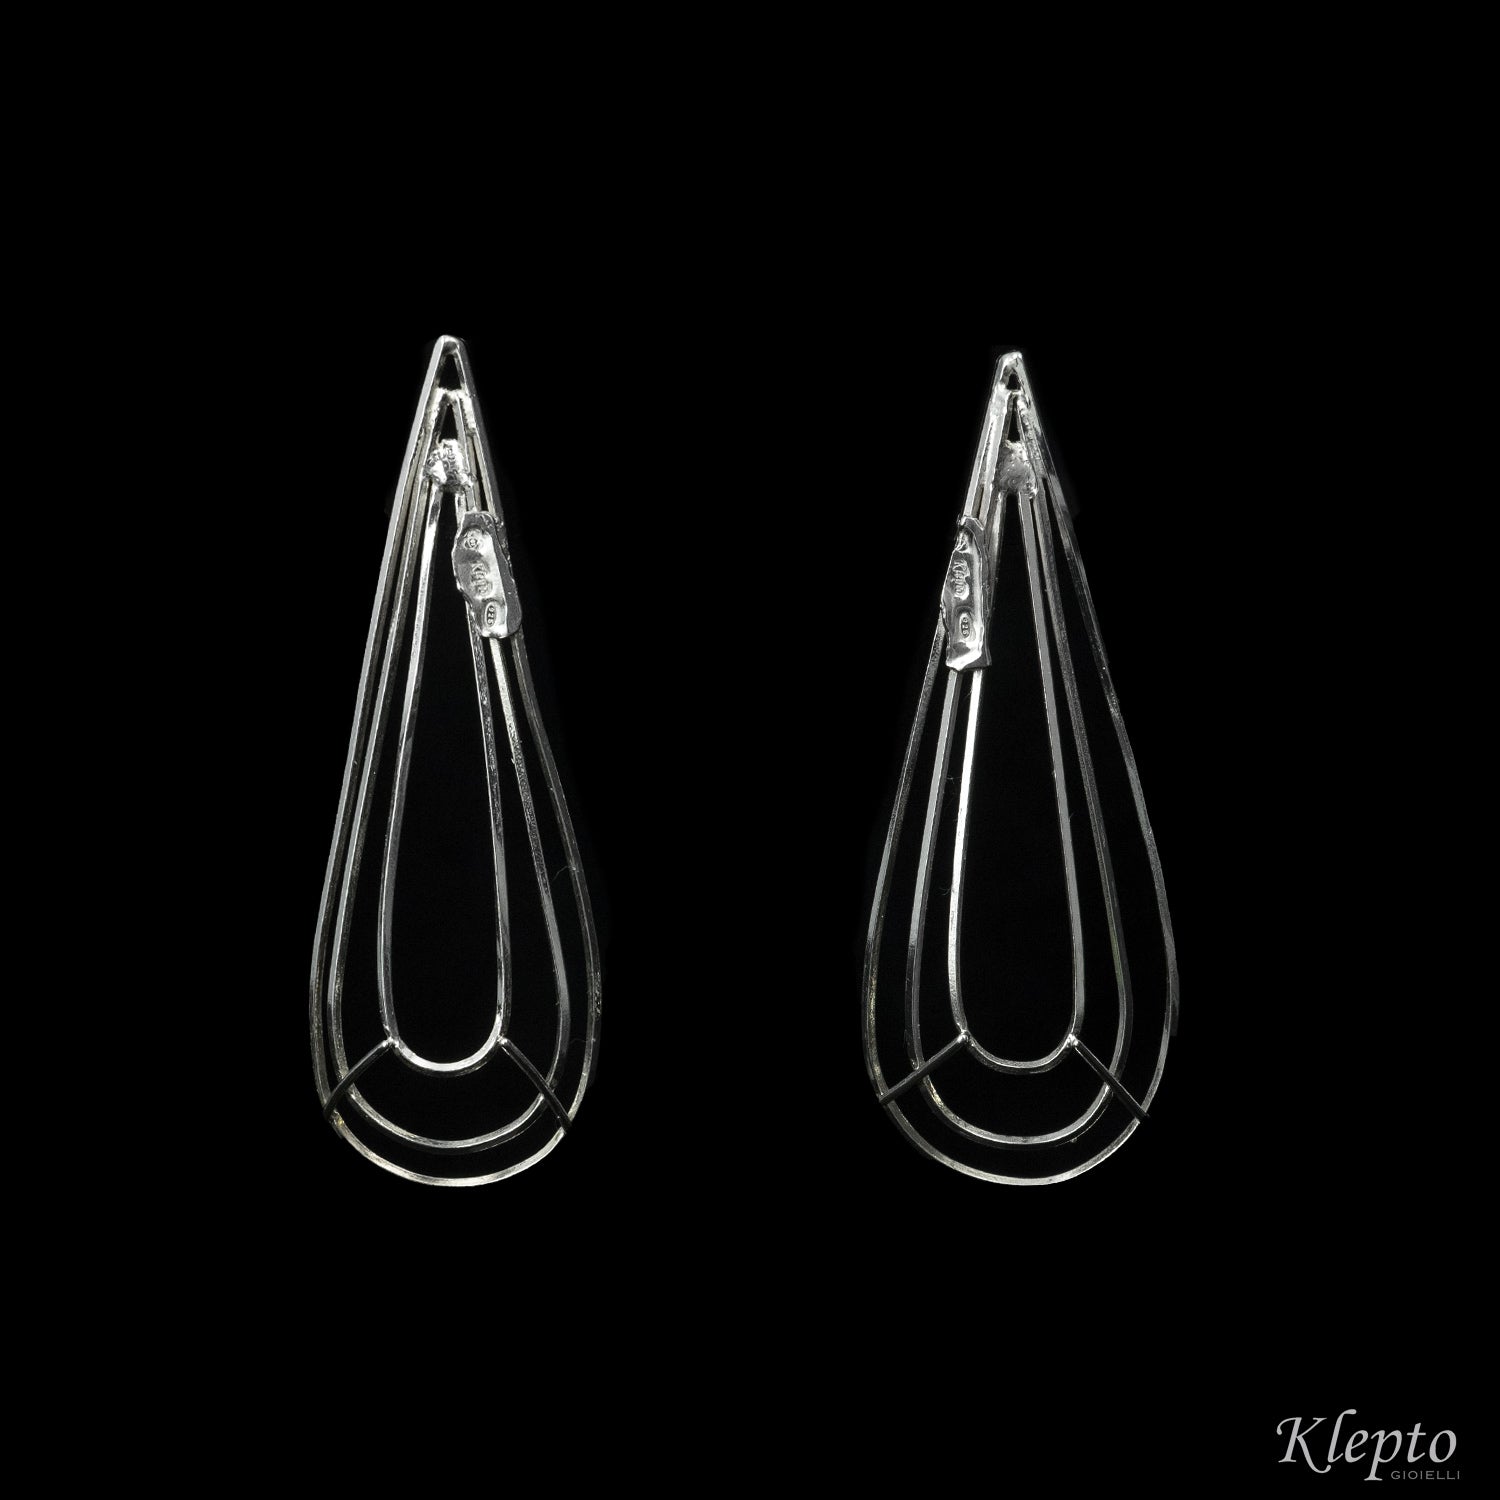 Wire earrings in Silnova® Silver